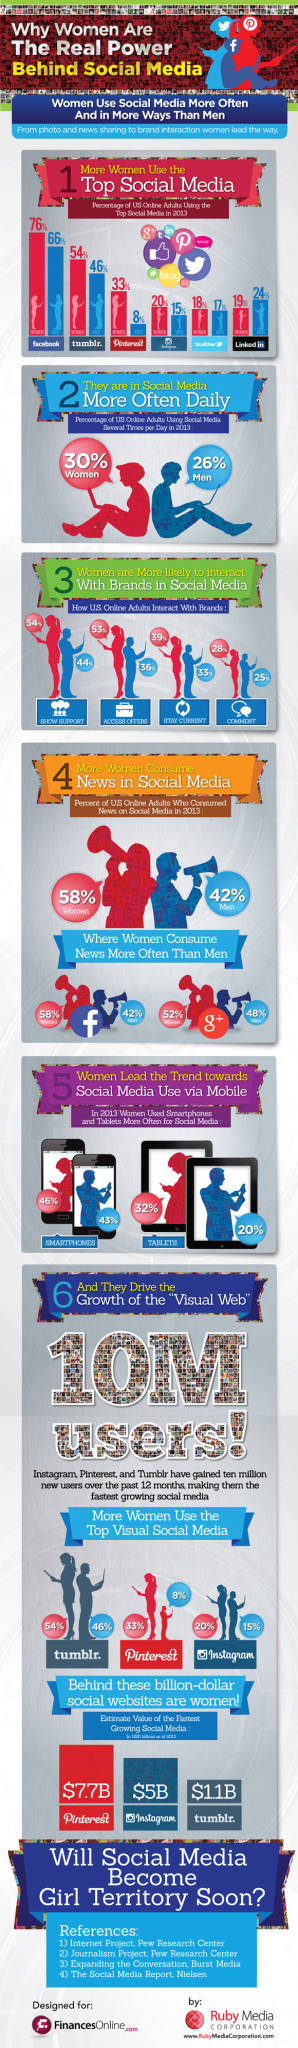 Las mujeres usan más y mejor los social media